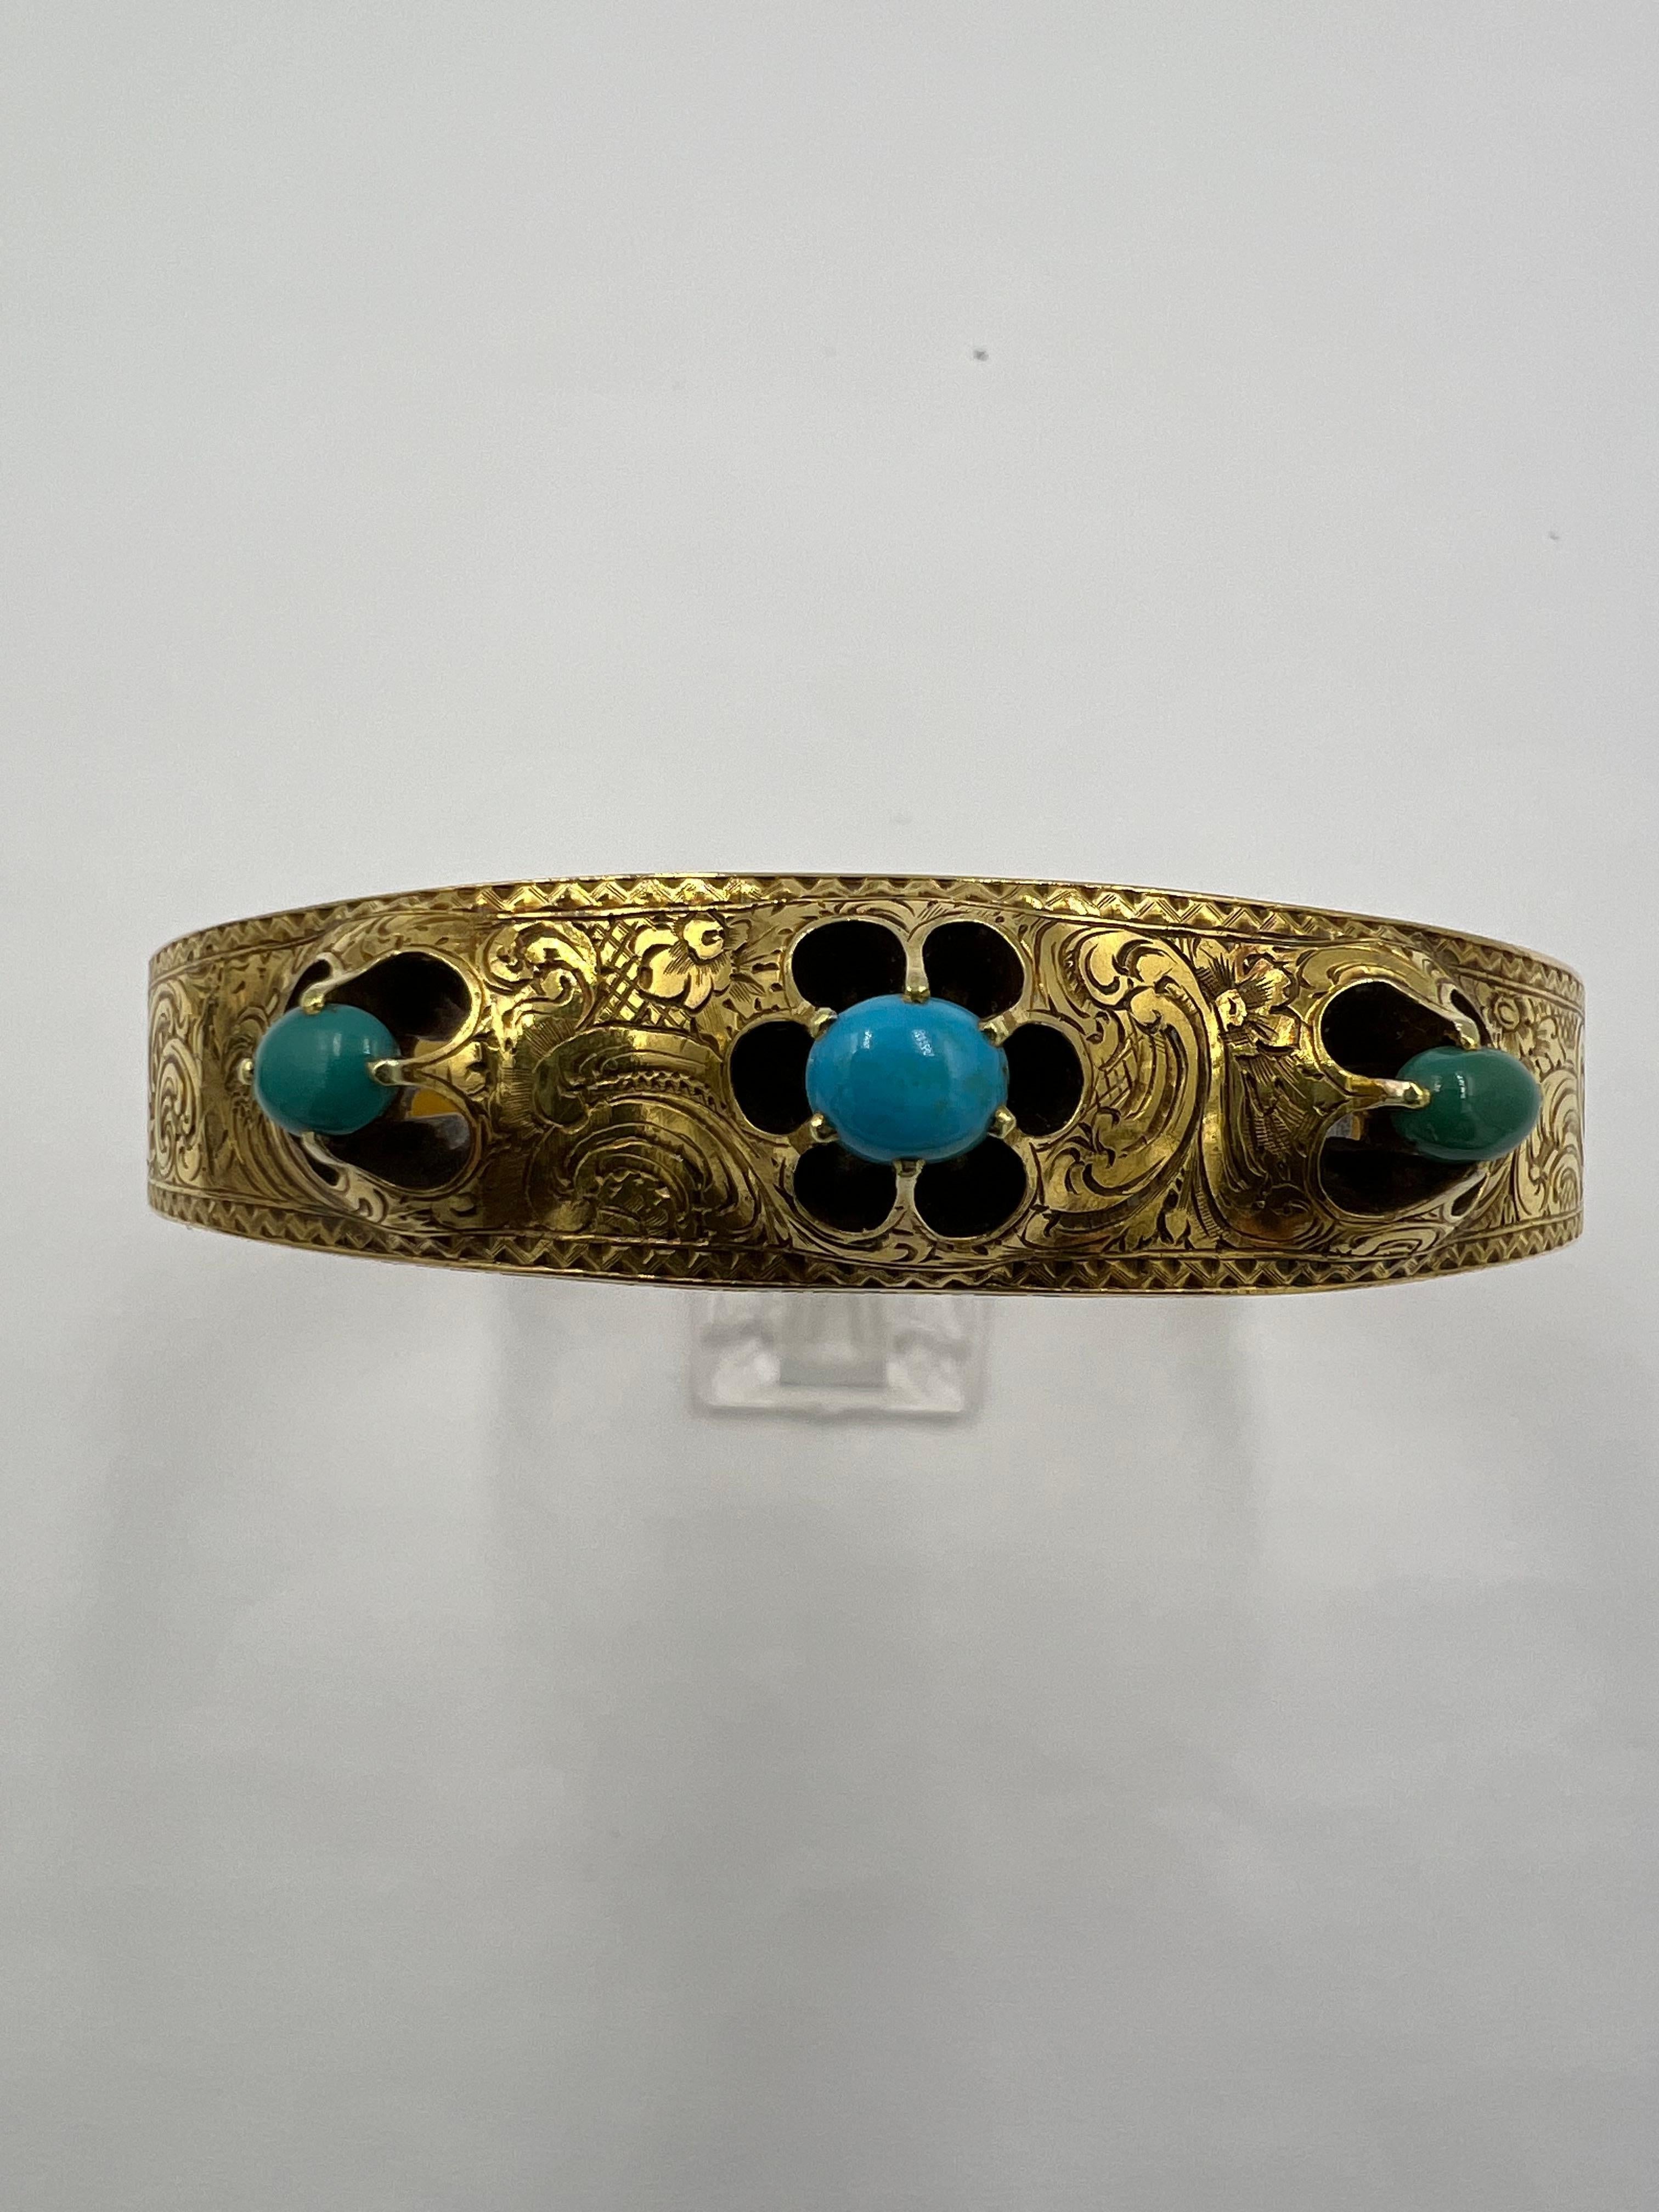 Bracelet-bracelet victorien en or jaune turquoise ciselé à la main, vers 1890.
Ce bracelet victorien en or jaune turquoise ciselé à la main est un bijou époustouflant qui ne manquera pas de faire tourner les têtes et d'attirer l'attention.